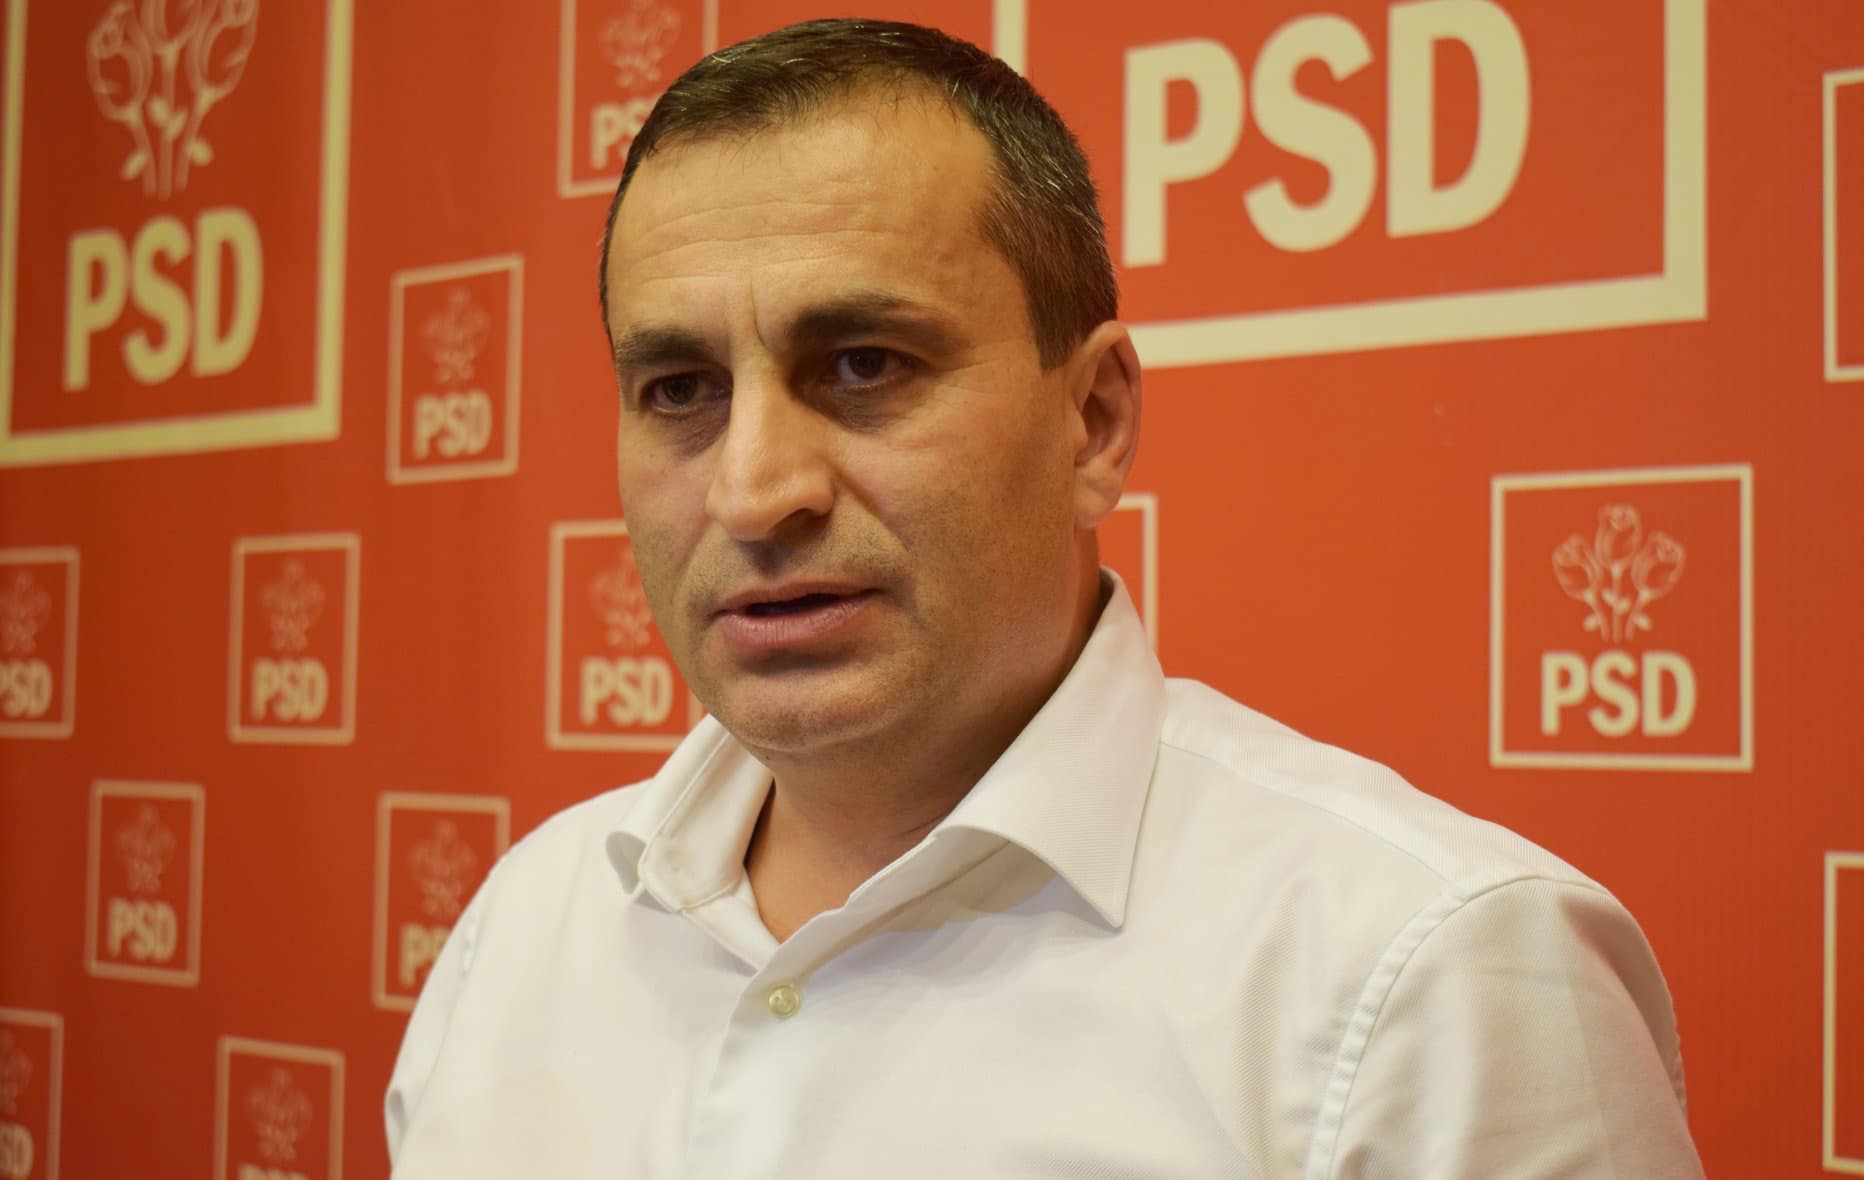 Marius Oprescu, preşedinte CJ Olt: “Dacă acum 4 ani am avut 54% vot politic la Consiliul Judeţean şi 95% la primari, anul acesta sperăm să depăşim acest prag”